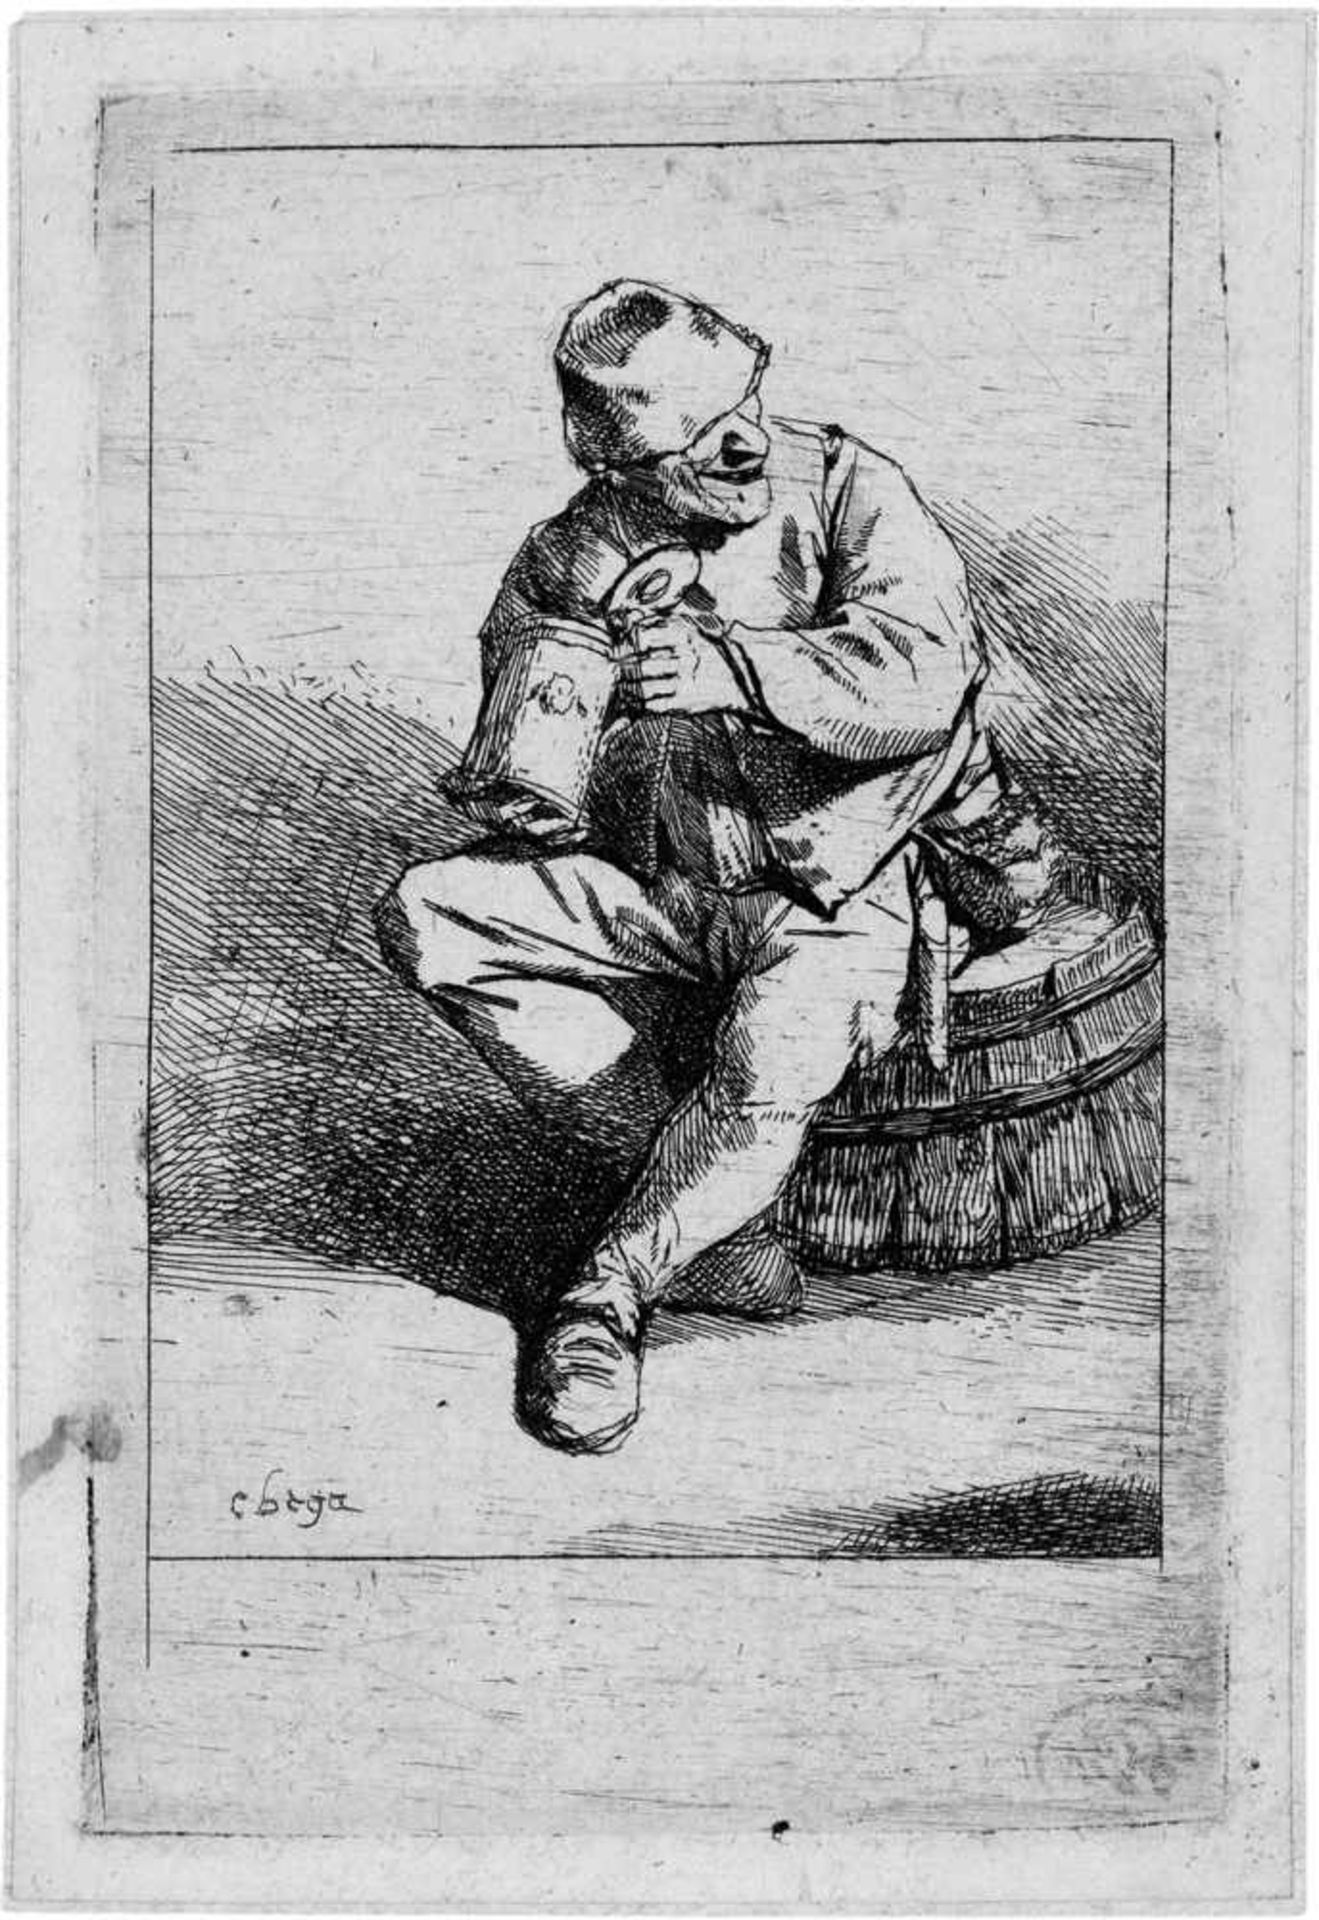 Bega, Cornelis: Der TrinkerDer Trinker. Radierung. 10,3 x 6,6 cm. B. 16, Dutuit 16, Hollstein 16